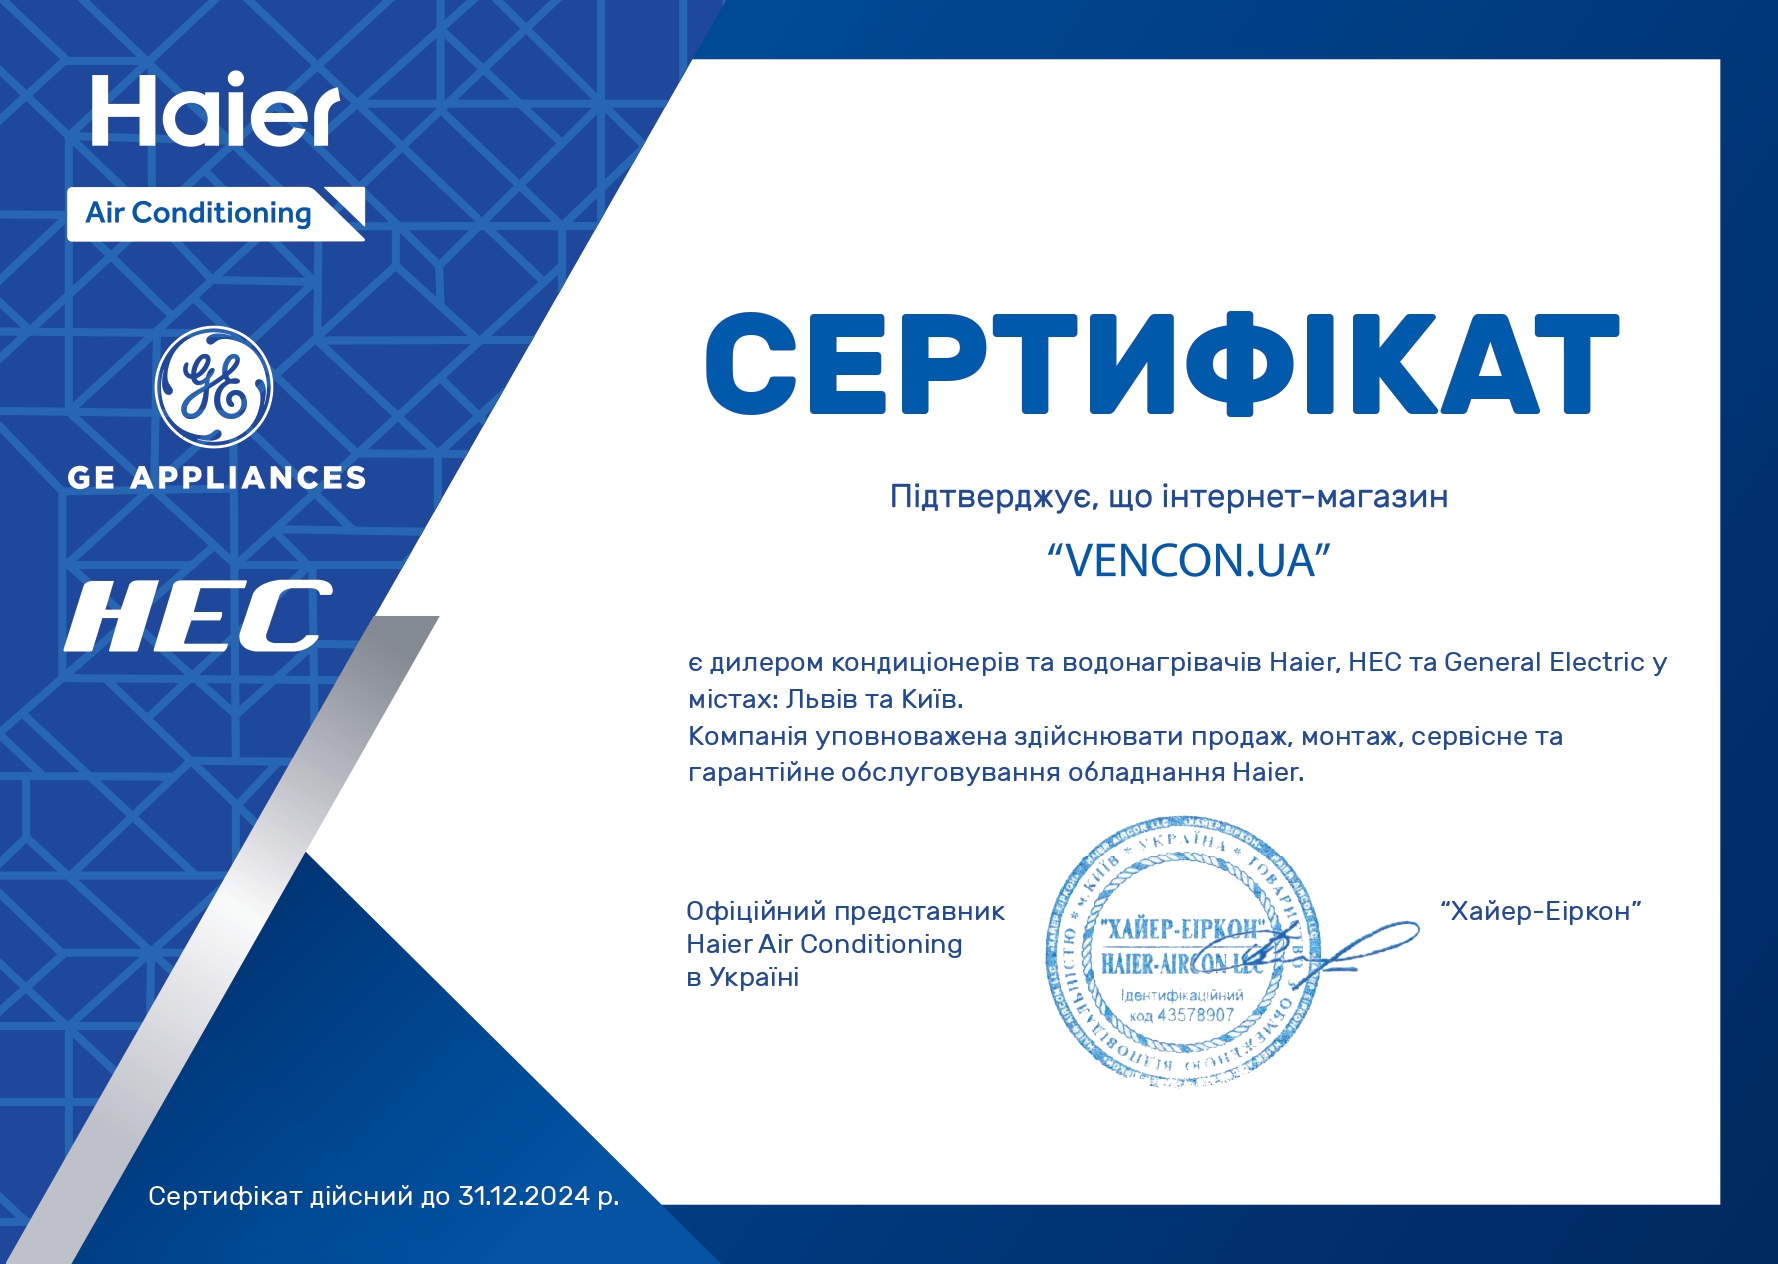 Кондиционеры Haier сплит-системы - сертификат официального продавца Haier